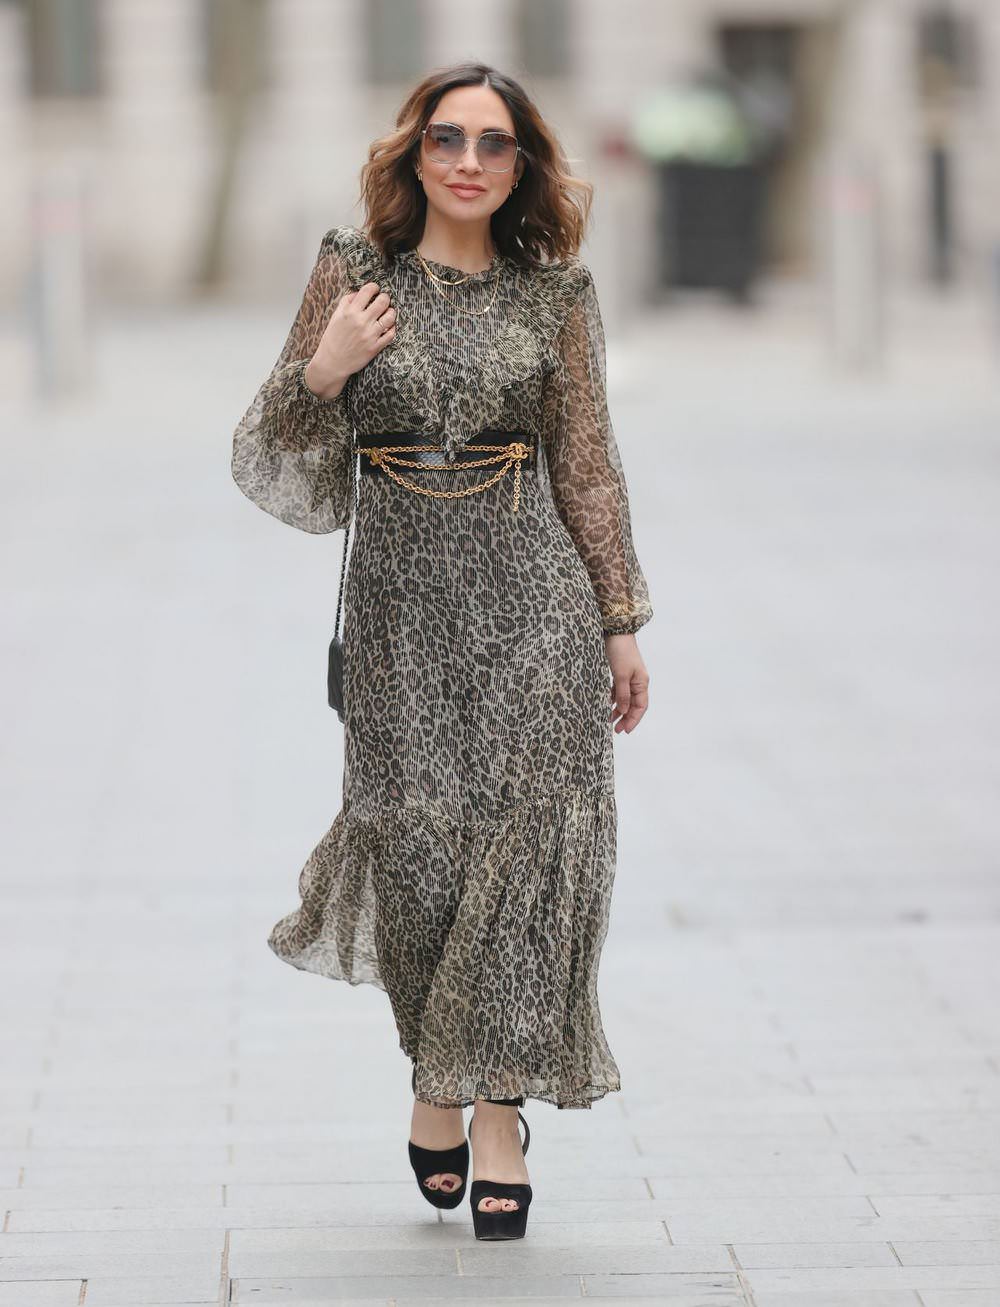 Myleene Klass in Sheer Leopard Print Dress in London